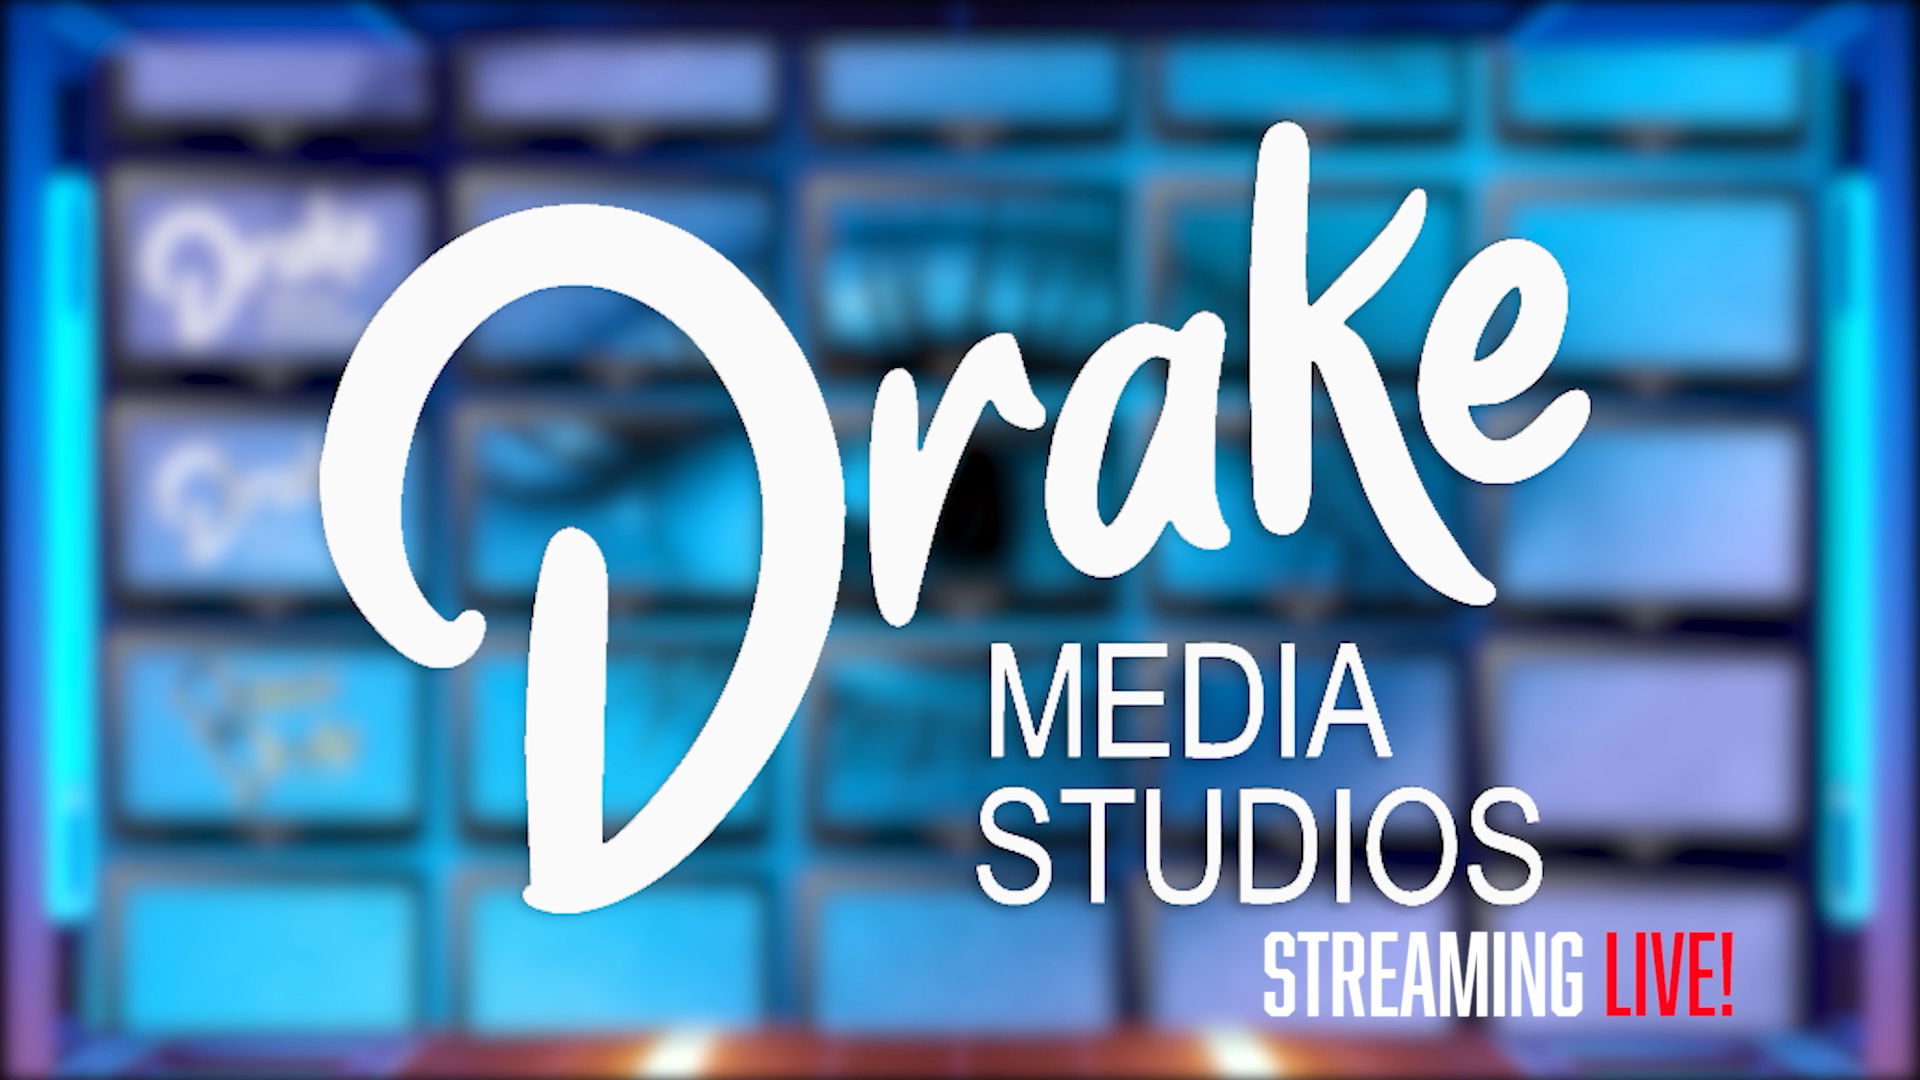 DRAKE MEDIA STUDIOS: Streaming Live!